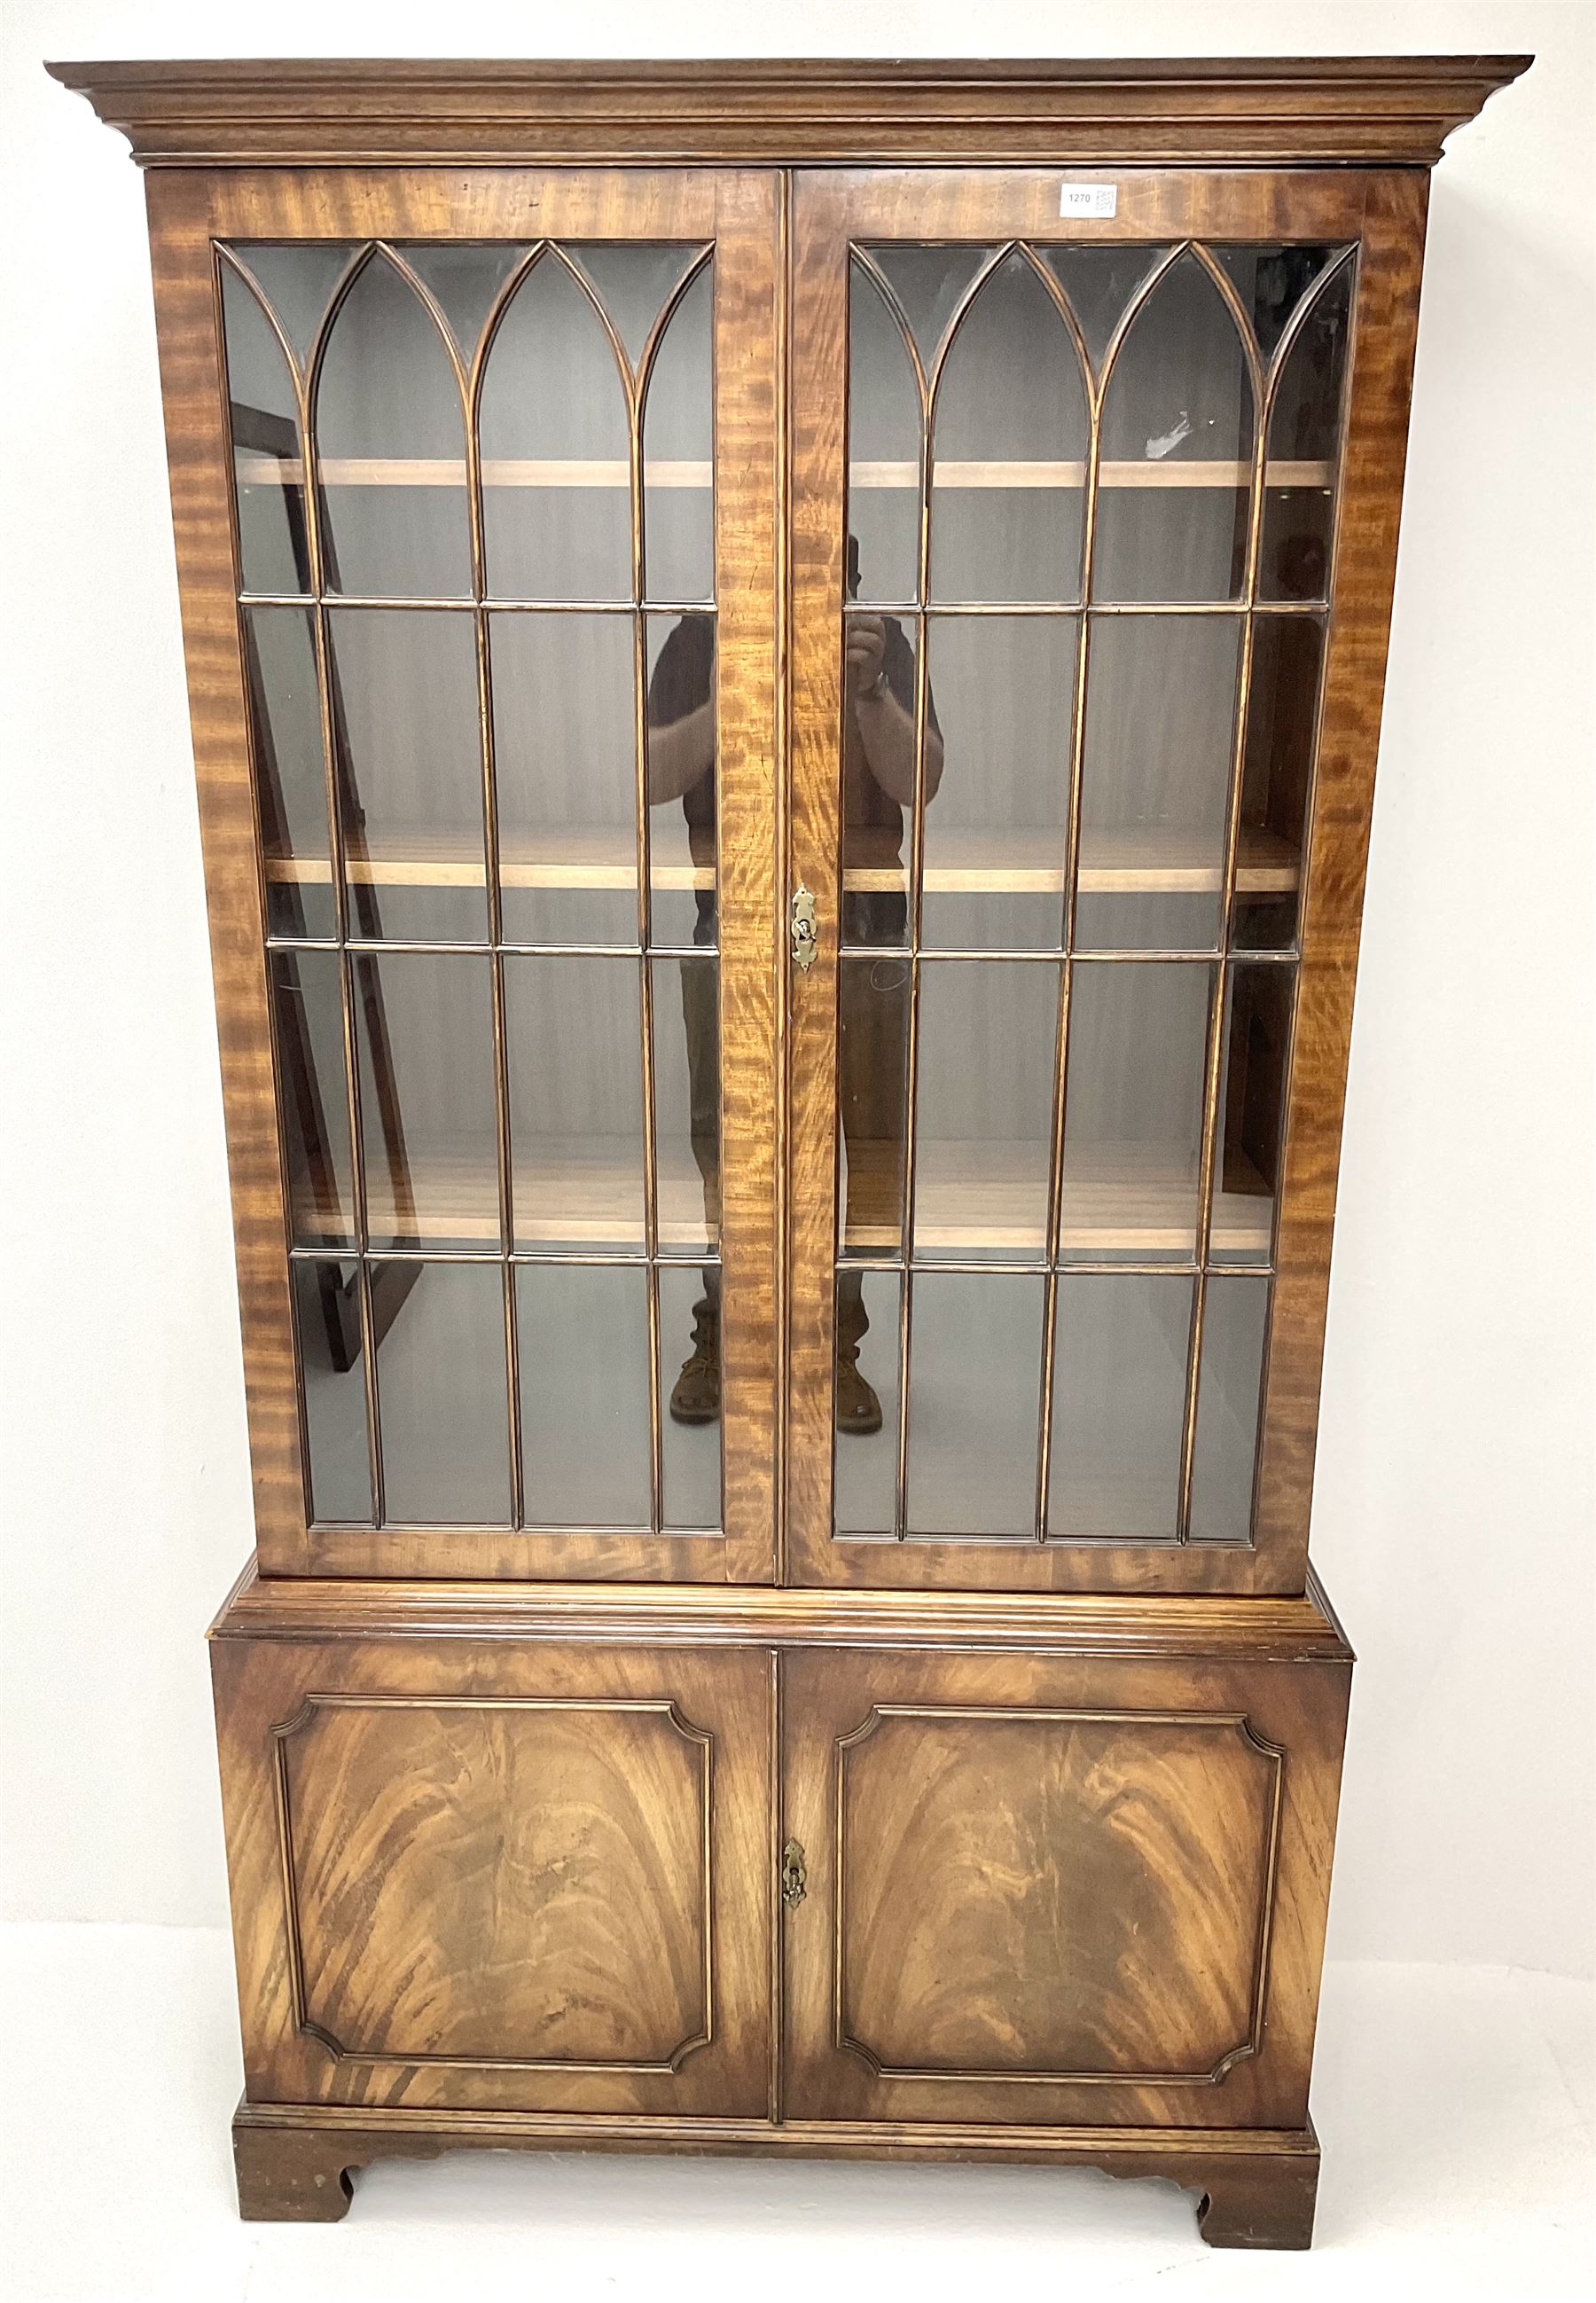 20th century mahogany bookcase - Image 2 of 3